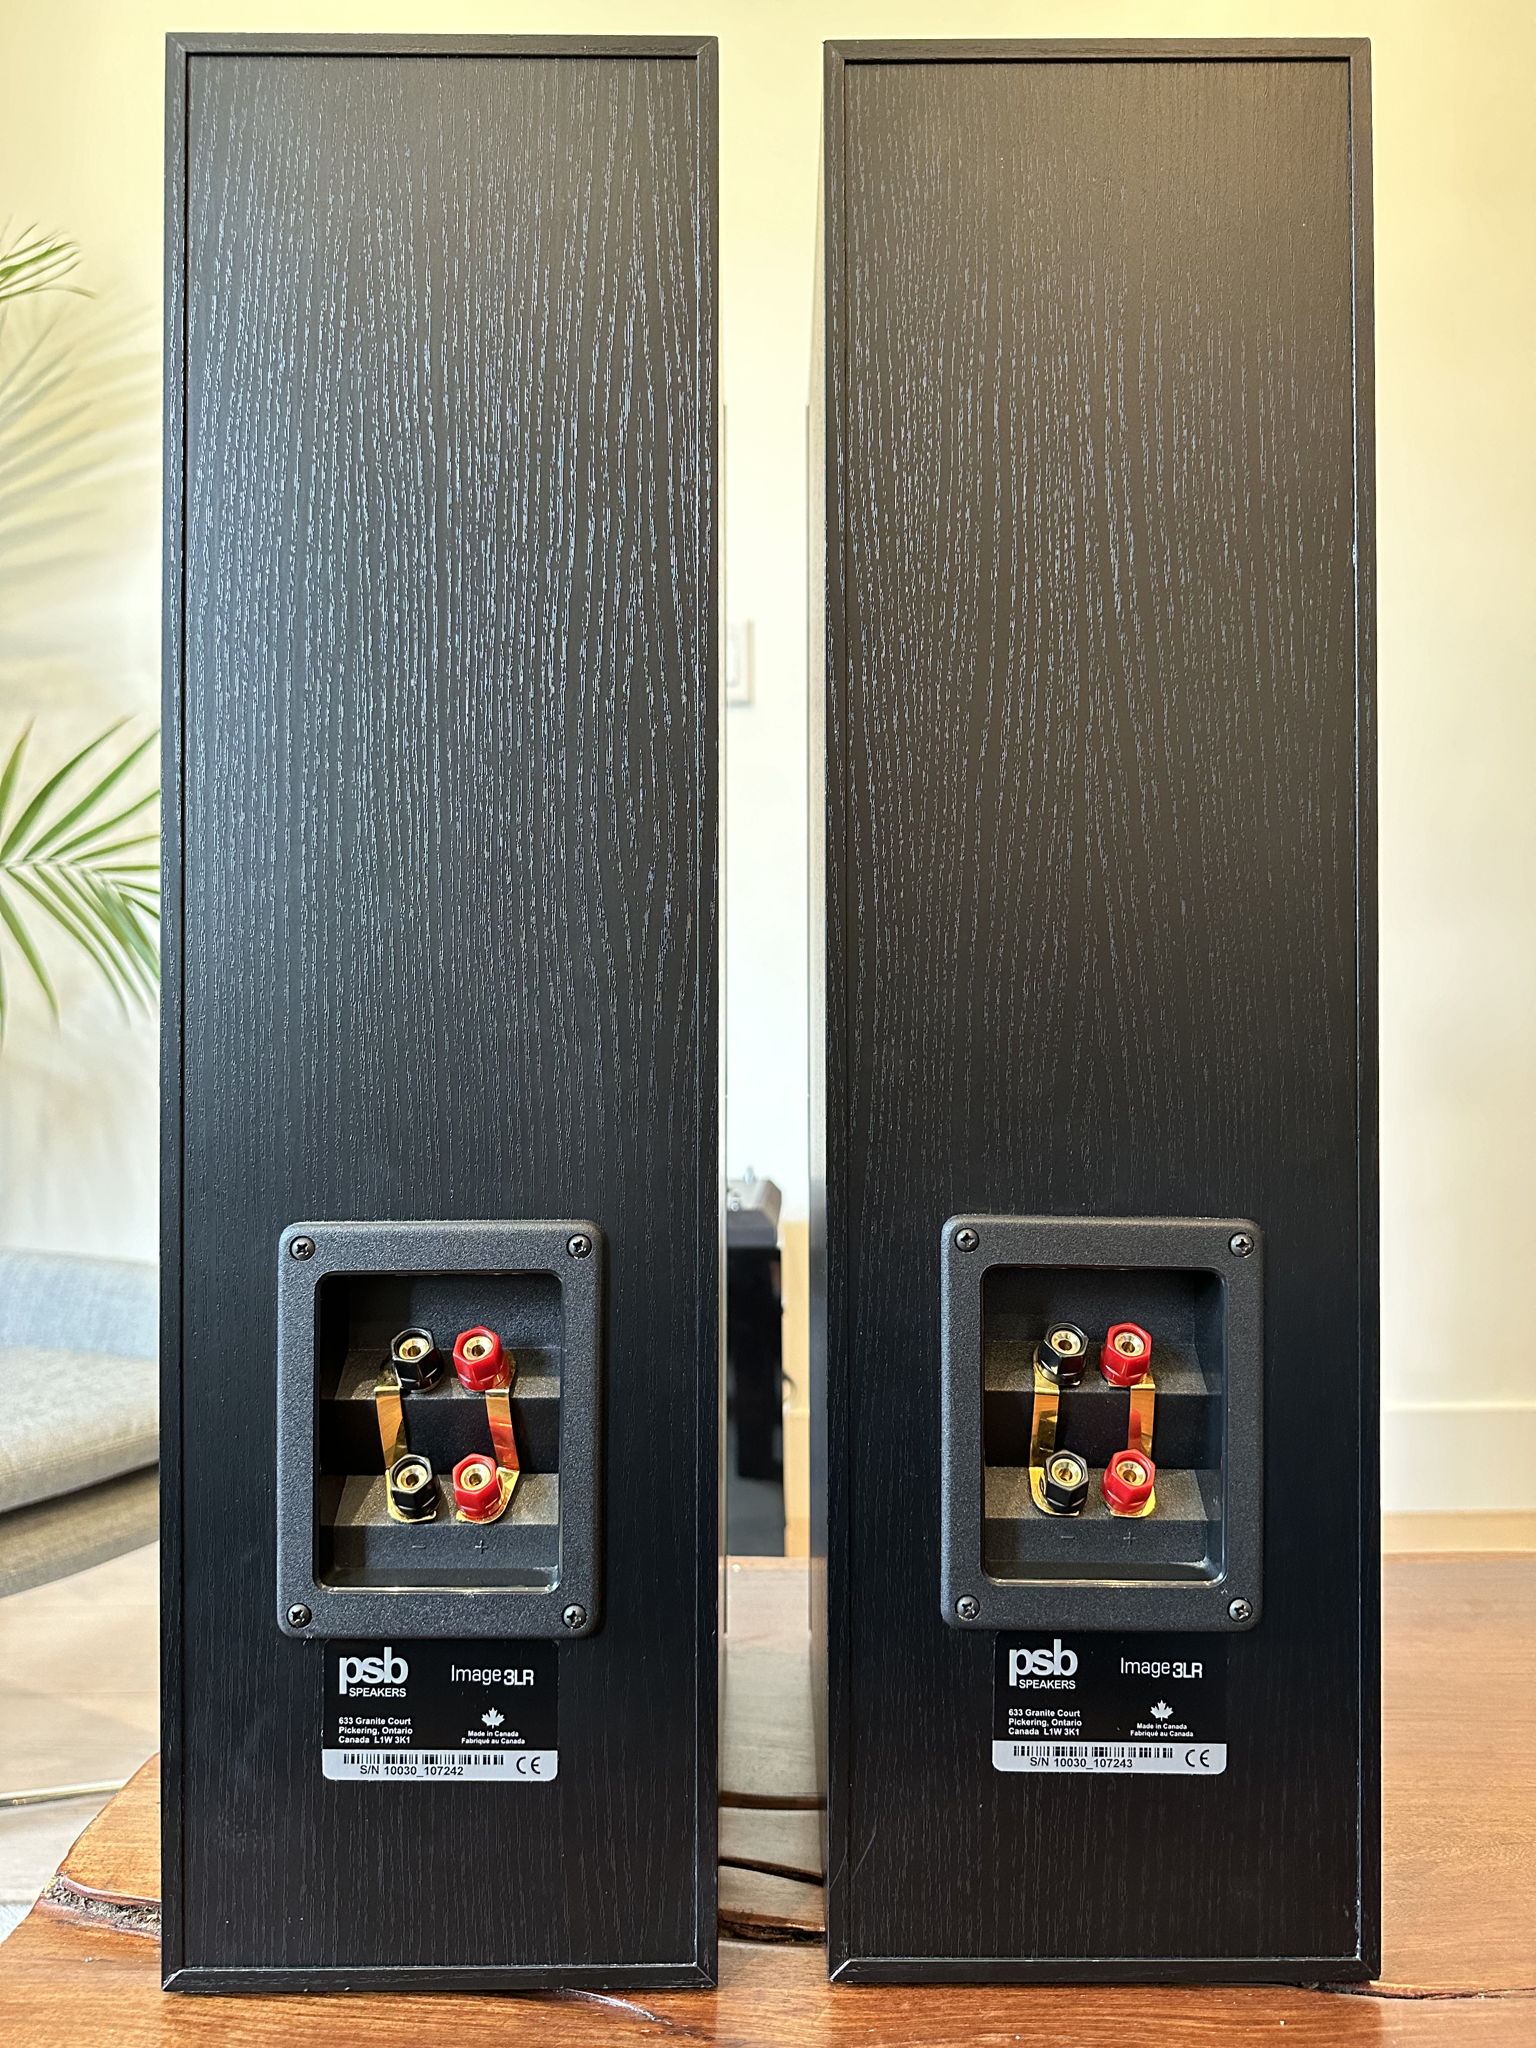 PSB Image 3lr Speaker Monitor Pair Full Range Bookshelf... 6